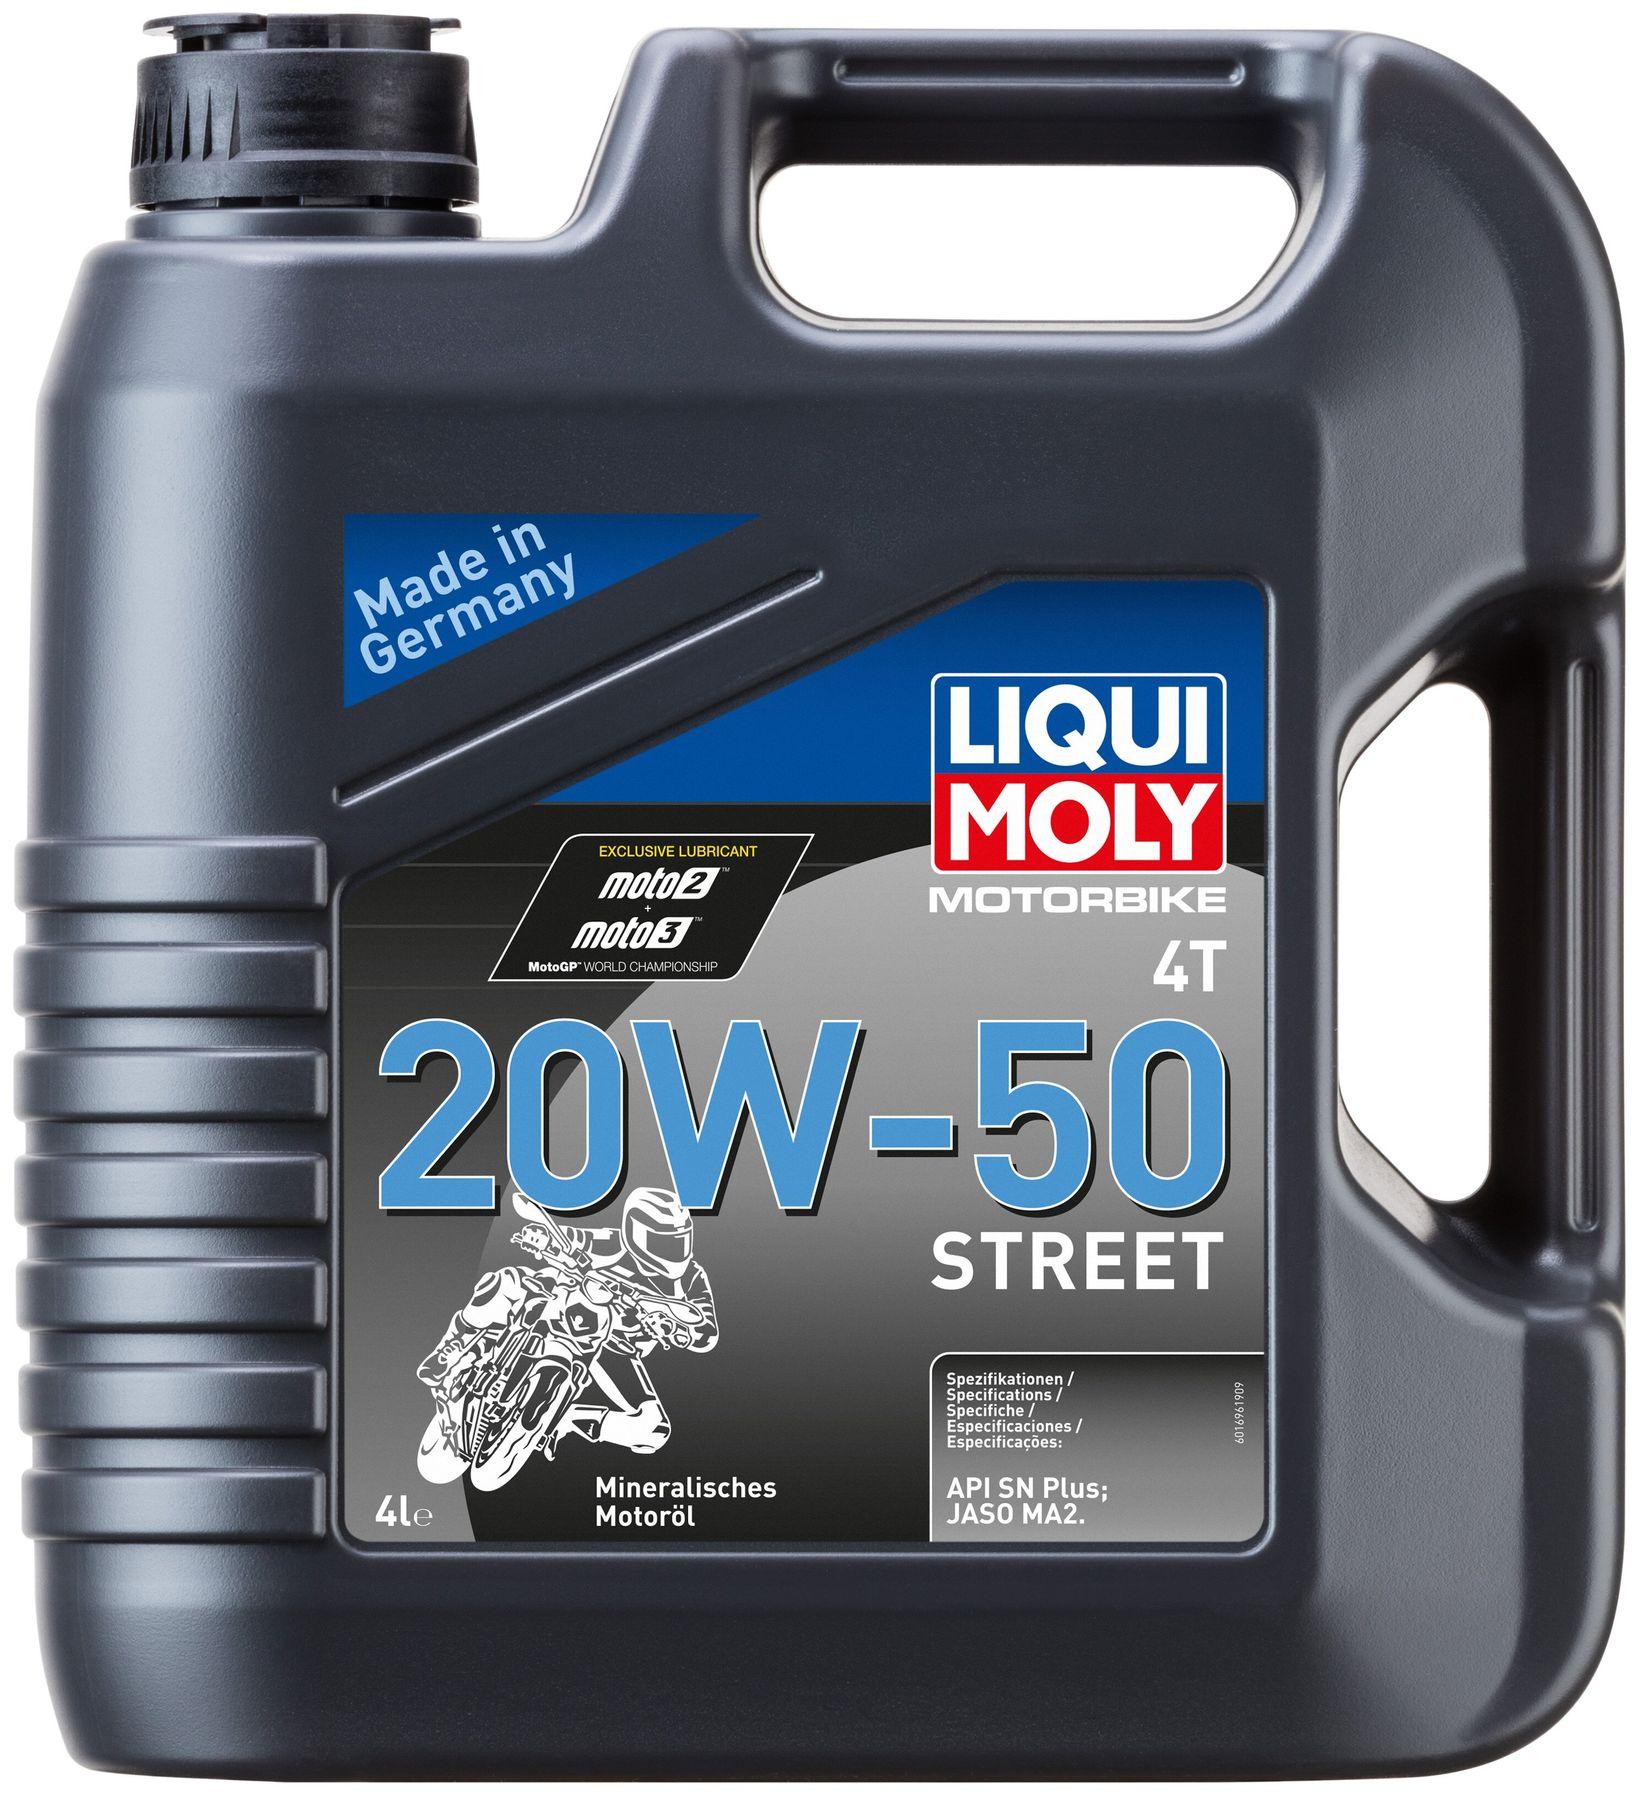 Моторное масло Liqui Moly Motorbike 4T 20W-50 Street, 4 литра (1696)